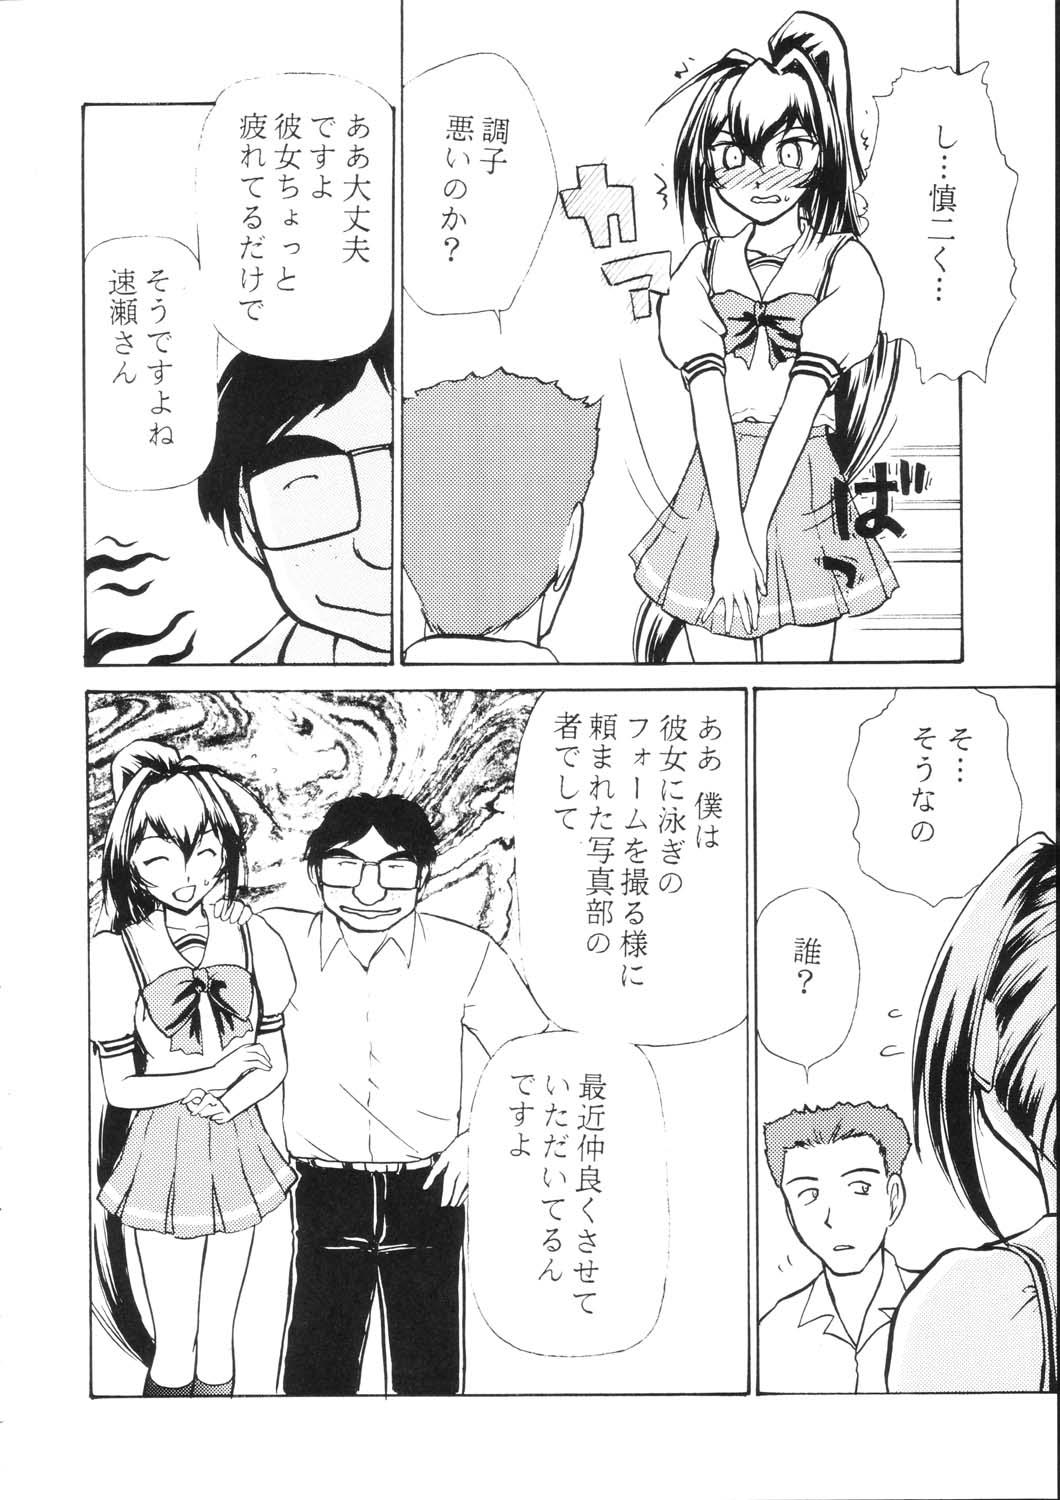 Pounded Namida Tsuki Go - Kimi ga nozomu eien Watersports - Page 9